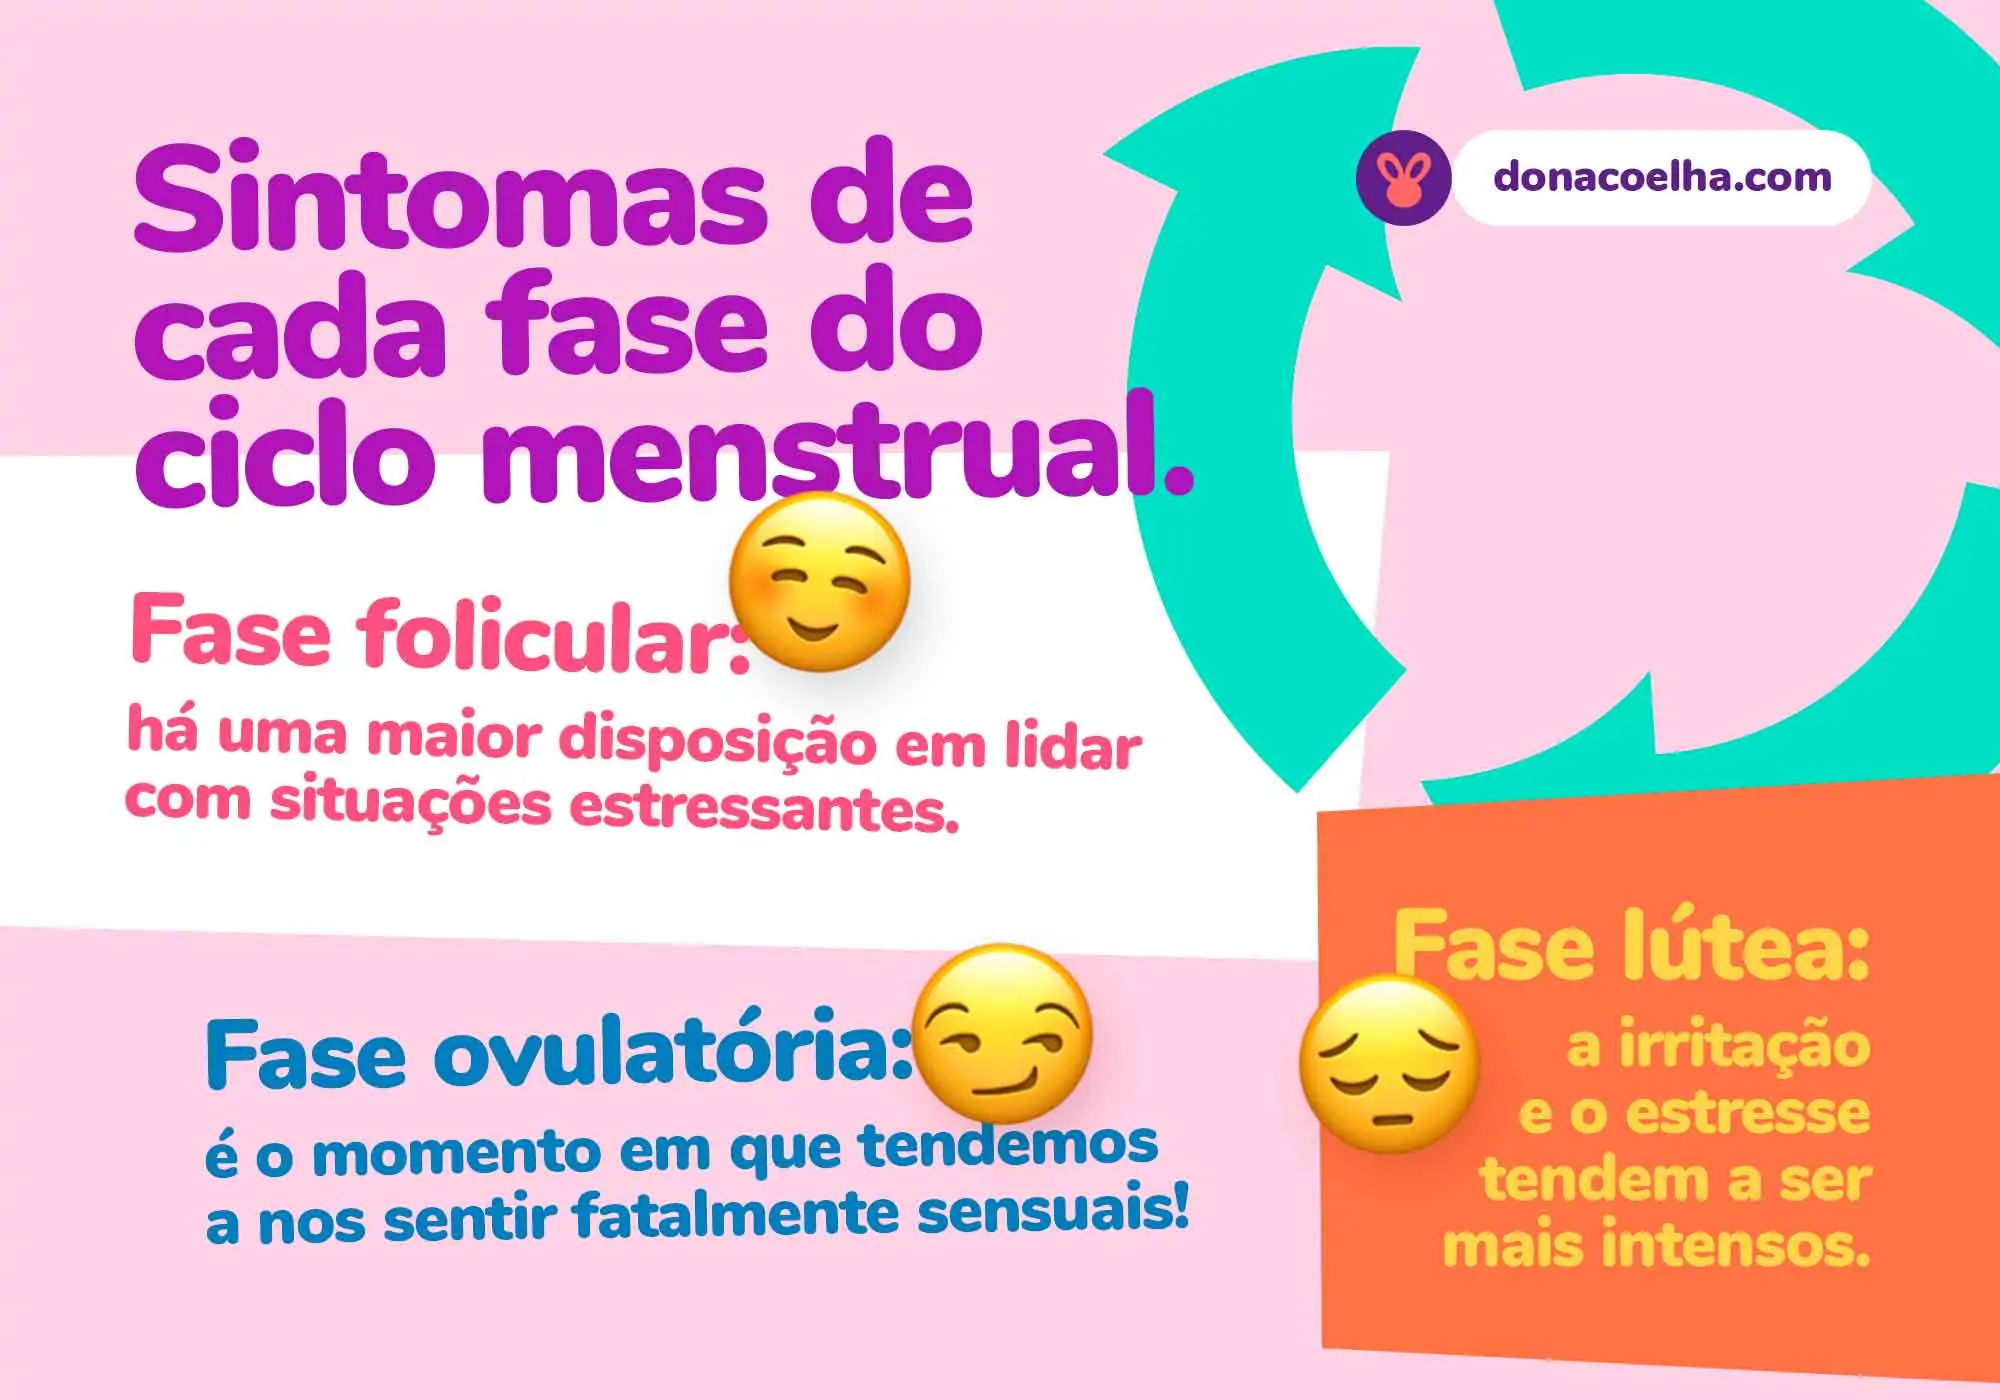 Infográfico com explicação dos sintomas das fases do ciclo menstrual, relacionando emojis que se relacionam pra cada uma.